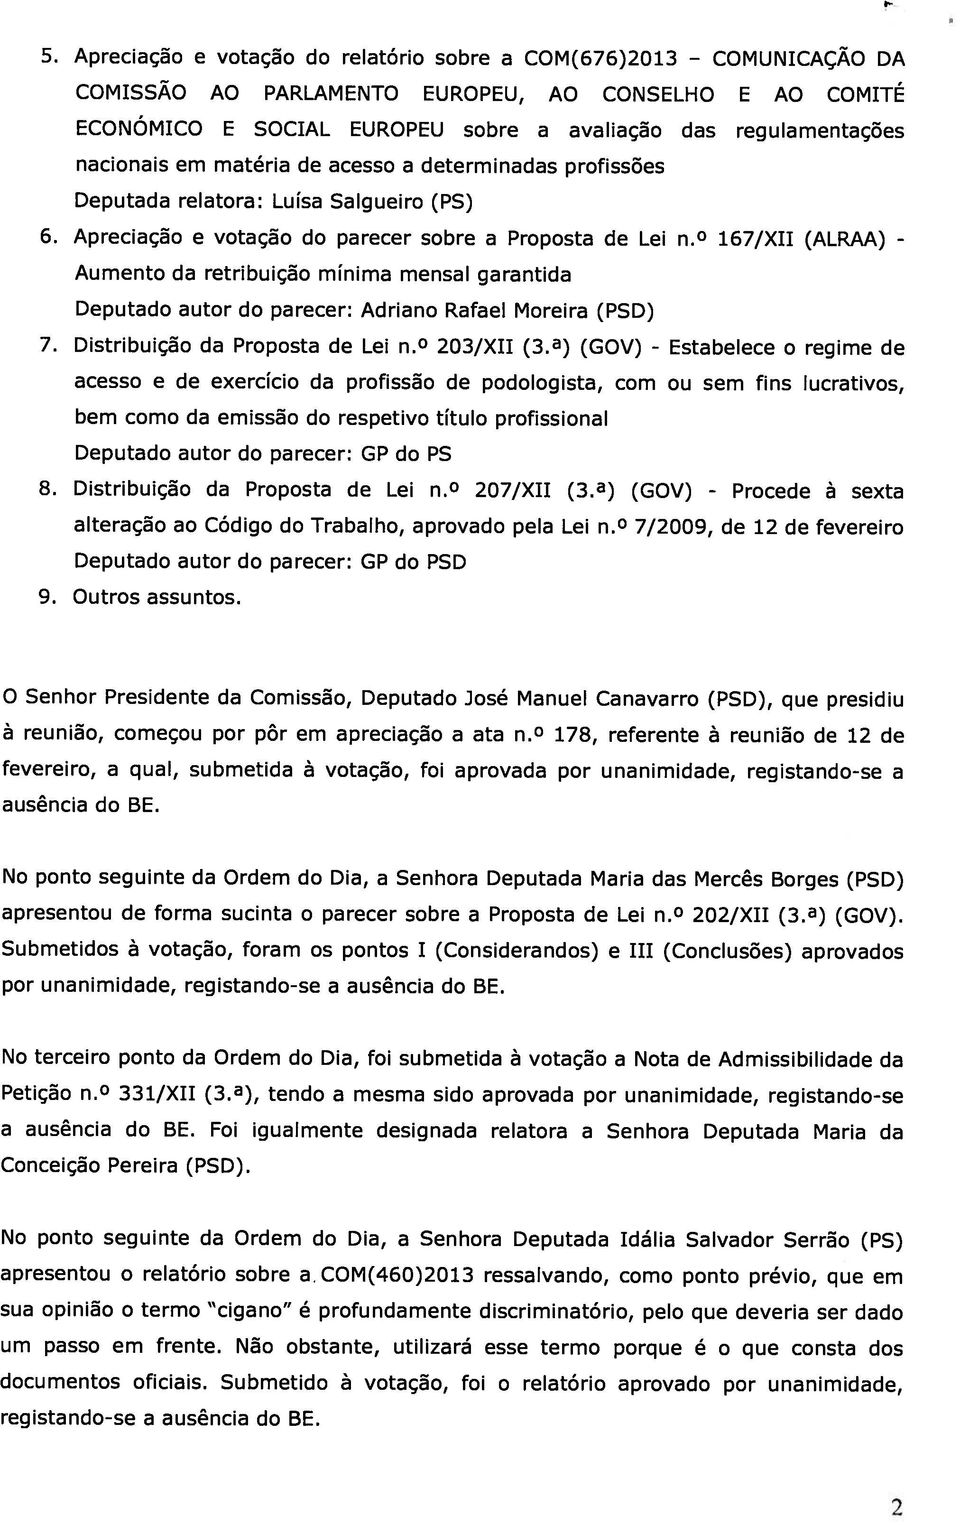 a) (GOV) - nacionais em matéria de acesso a determinadas profissões Aumento da retribuição mínima mensal garantida Deputada relatora: Luísa Salgueiro (PS) Deputado autor do parecer: Adriano Rafael